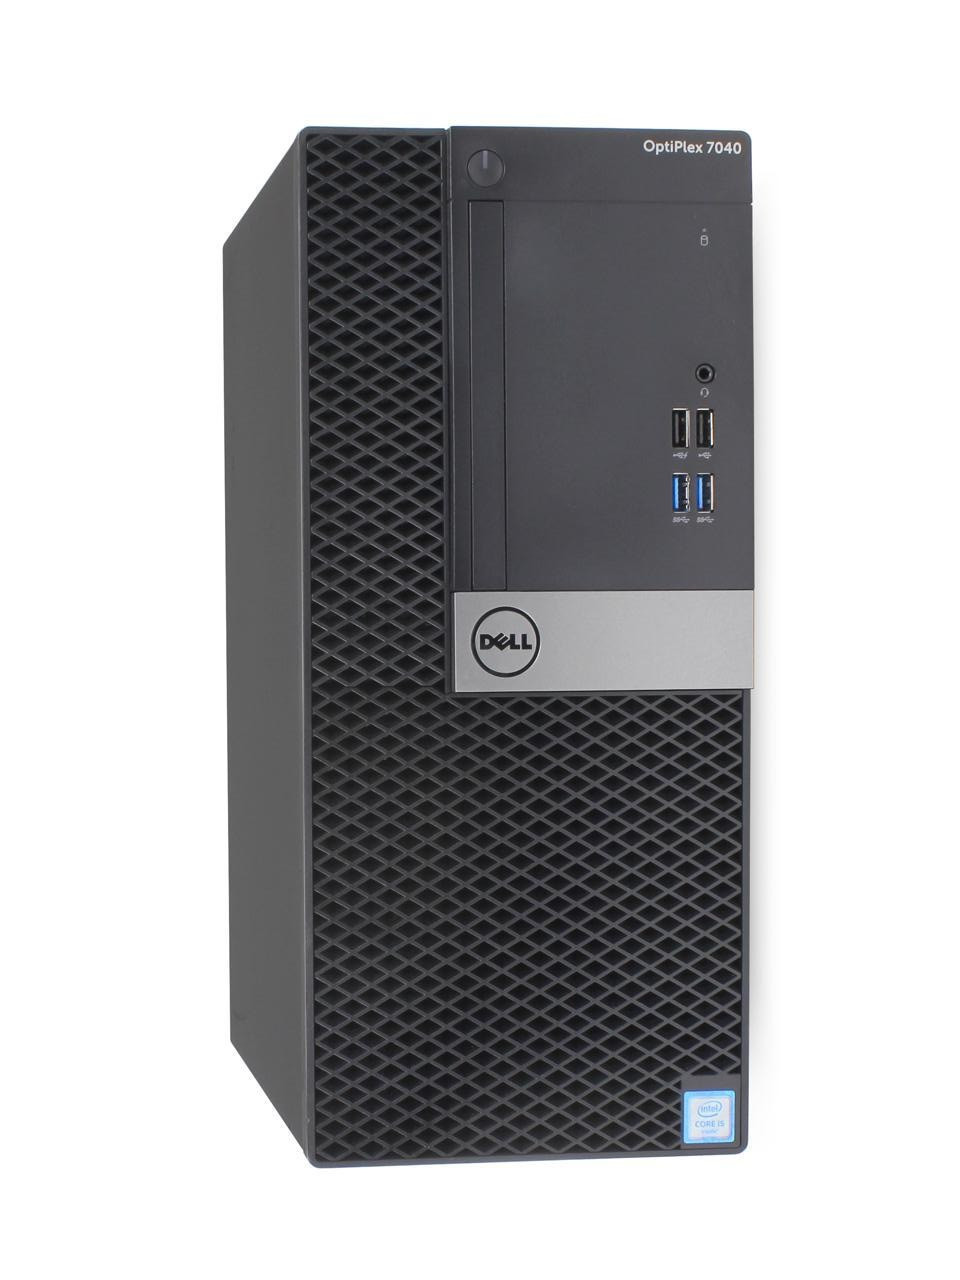 Dell Optiplex 7040 Desktop Intel Core i7 3.40 GHz 16GB 256 GB SSD Windows 10 Pro | Refurbished